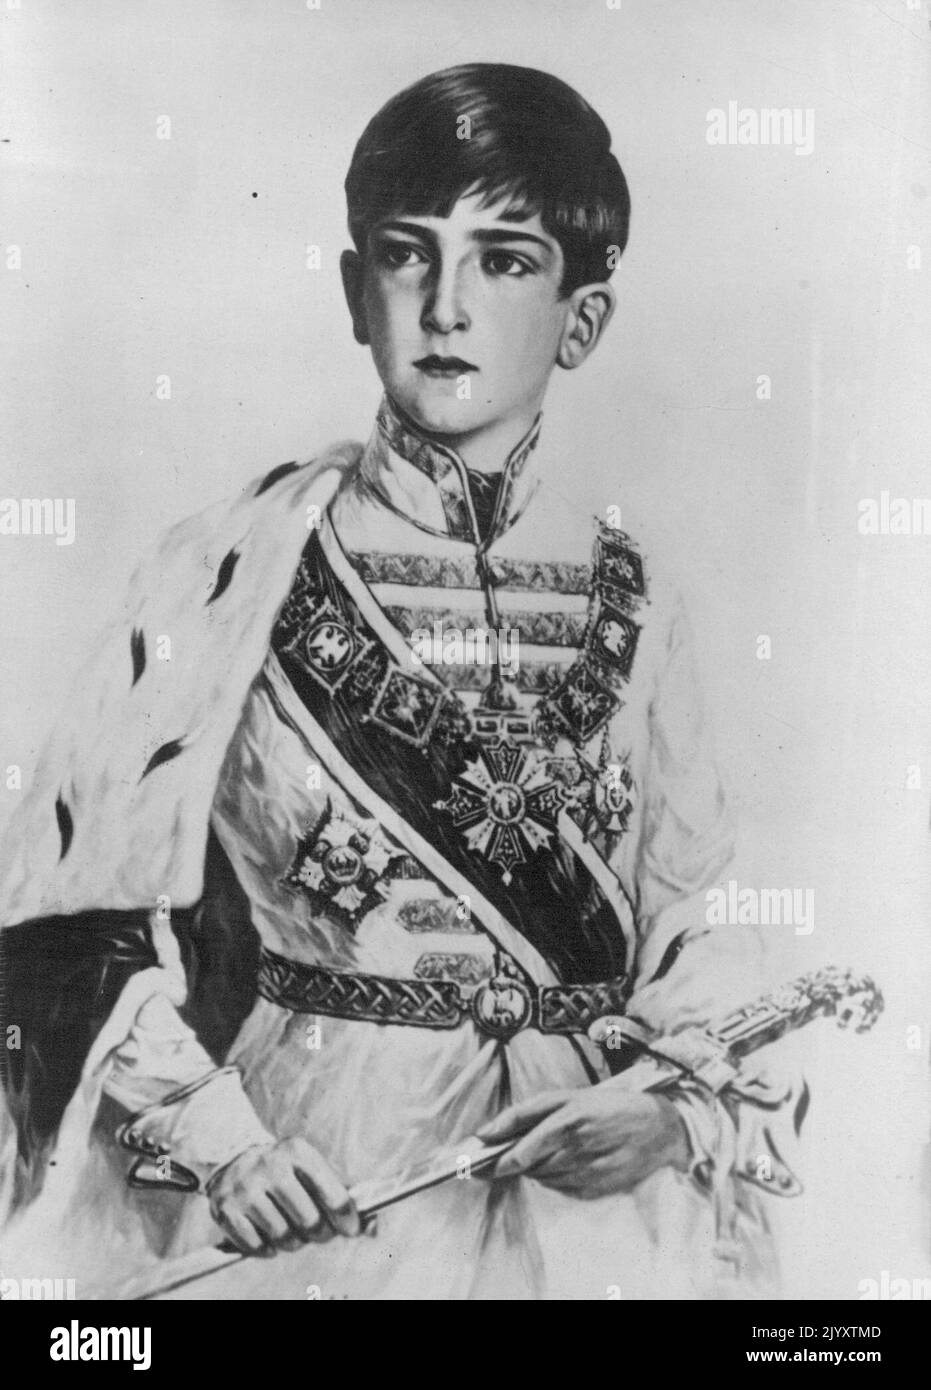 Europas jungster Konig. Neueste Aufnahme des jungen King Peter II von Jugoslawien in seiner traditionellen Furstentracht seiner vor fahren. 29 de julio de 1935. Foto de stock